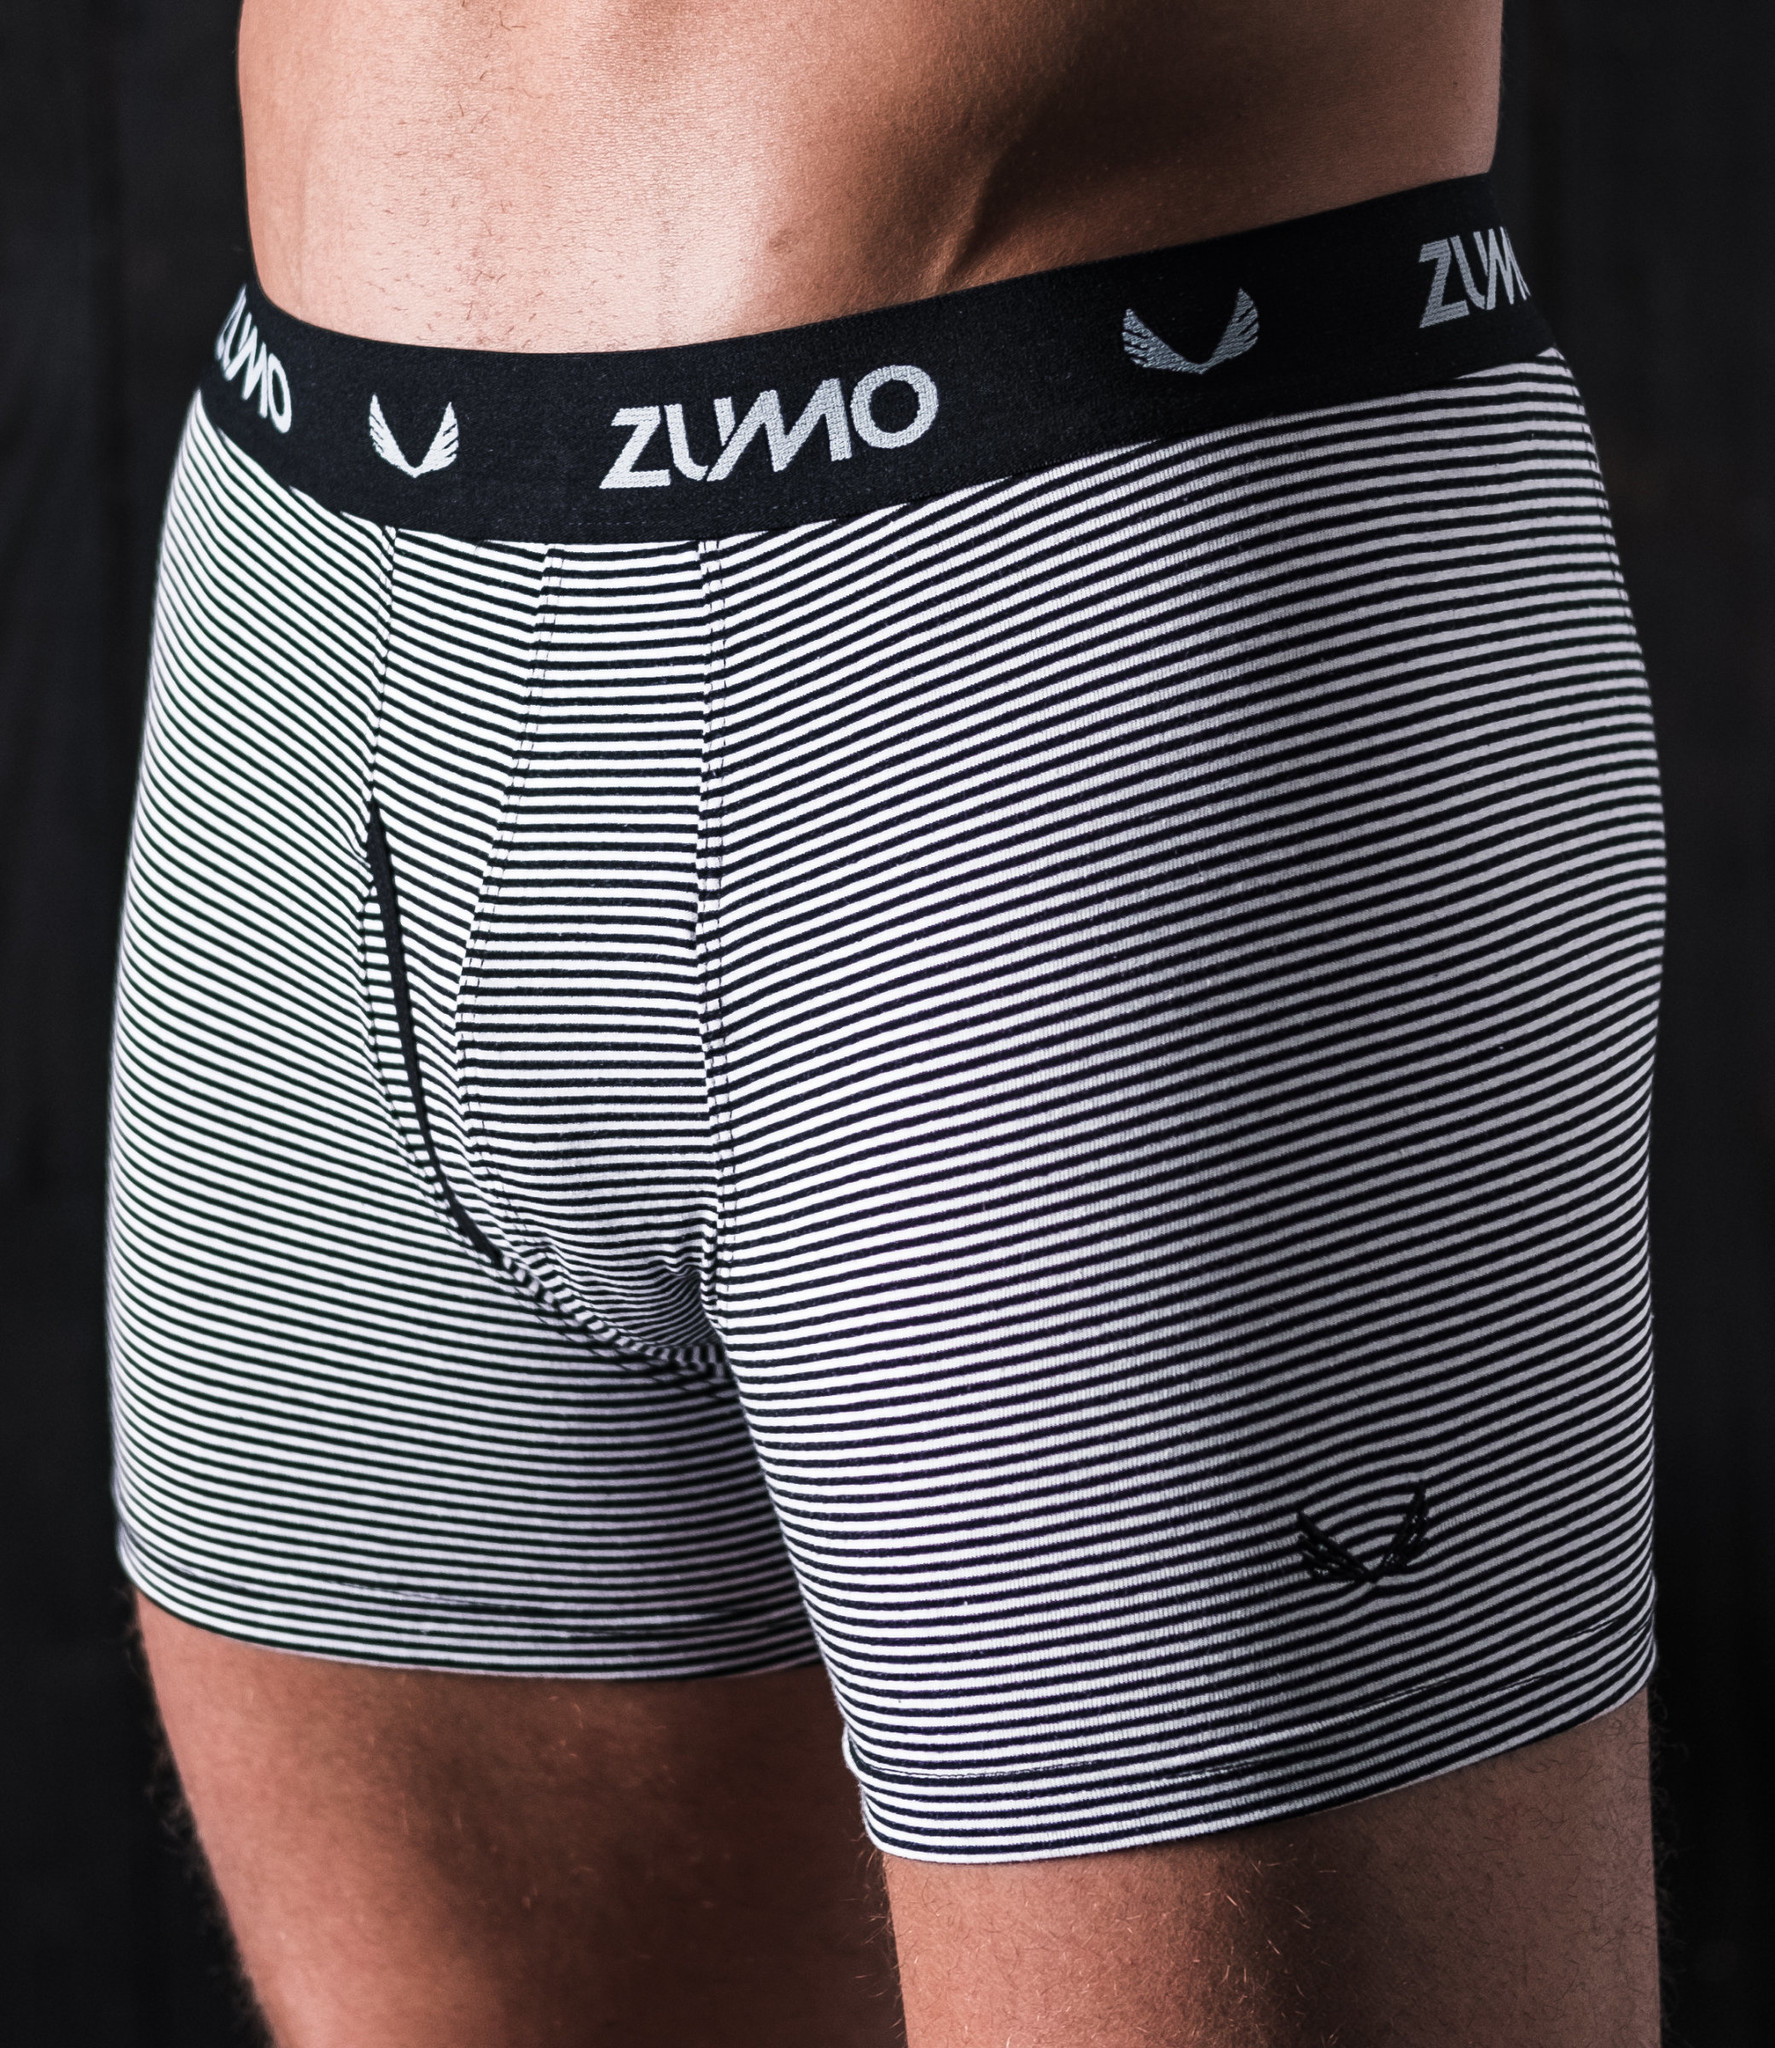 Zumo Slim Fit Underwear MERLIN-STRIPE BlackWhite ZUMO